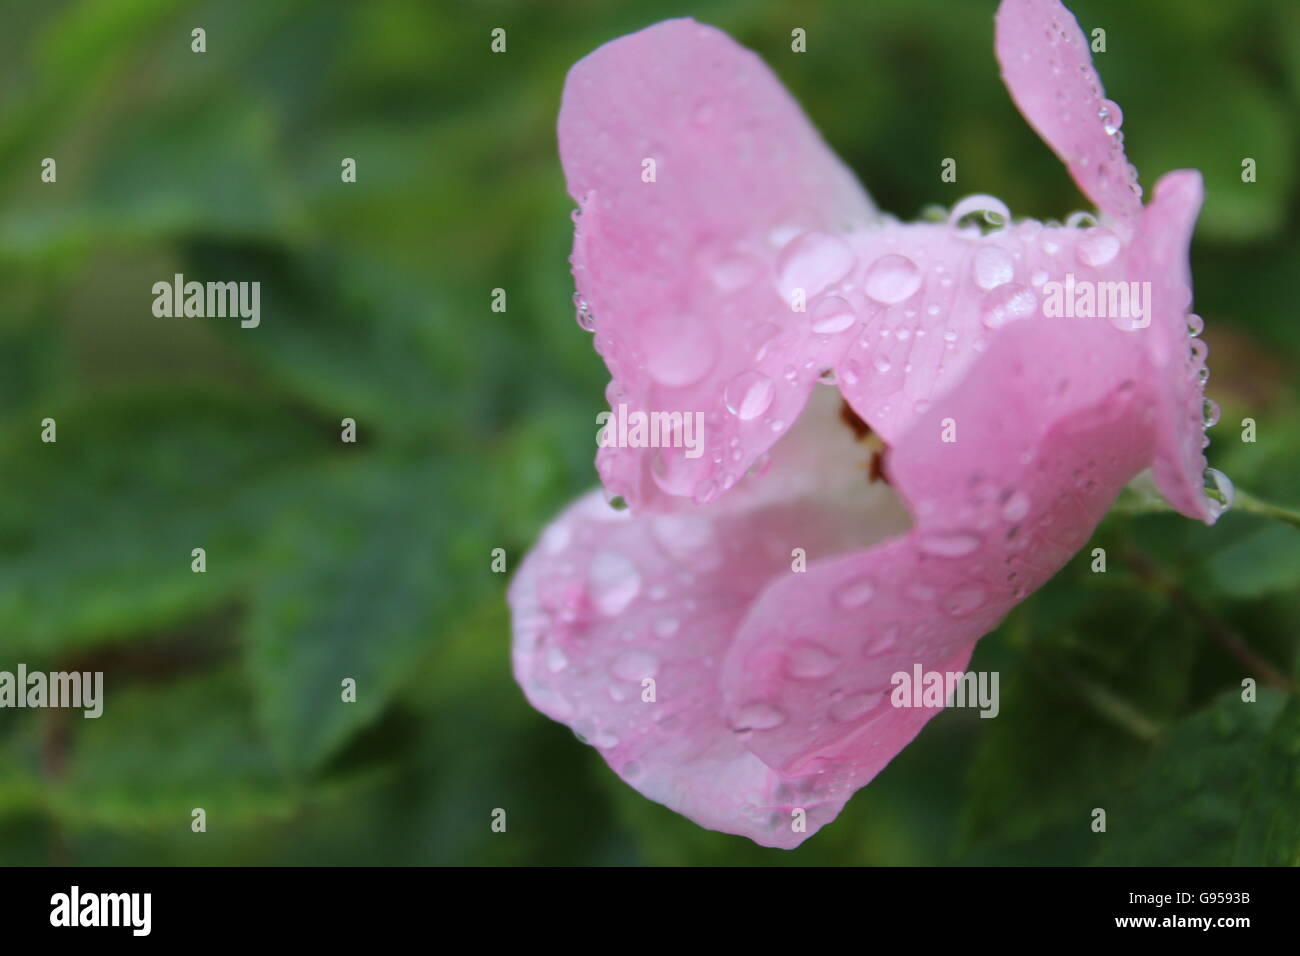 Una sola rosa perfecta, cubierto de gotas de lluvia. Foto de stock